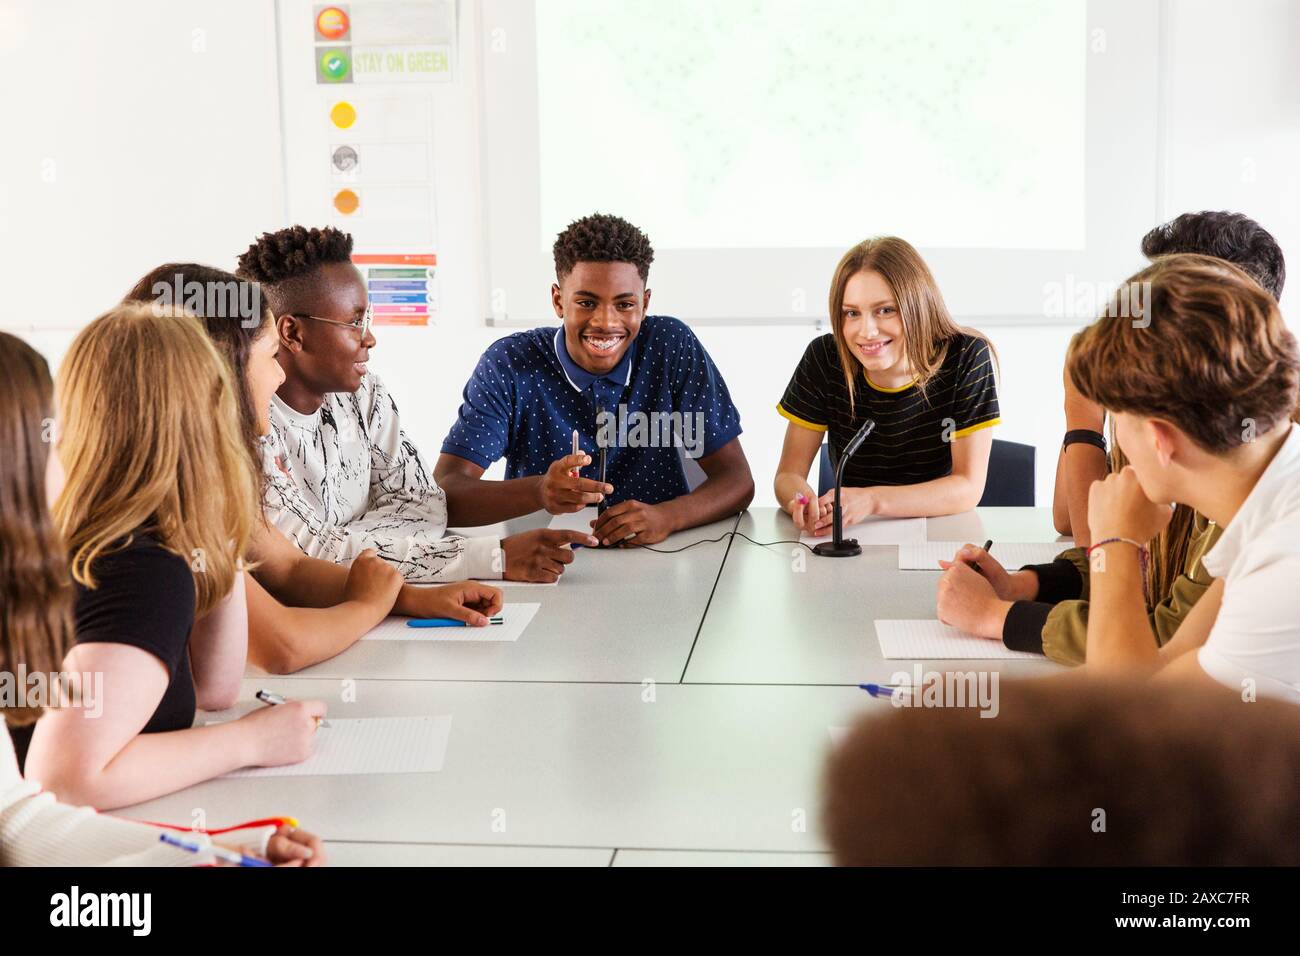 Des élèves souriants du secondaire parlent en classe de débat Banque D'Images